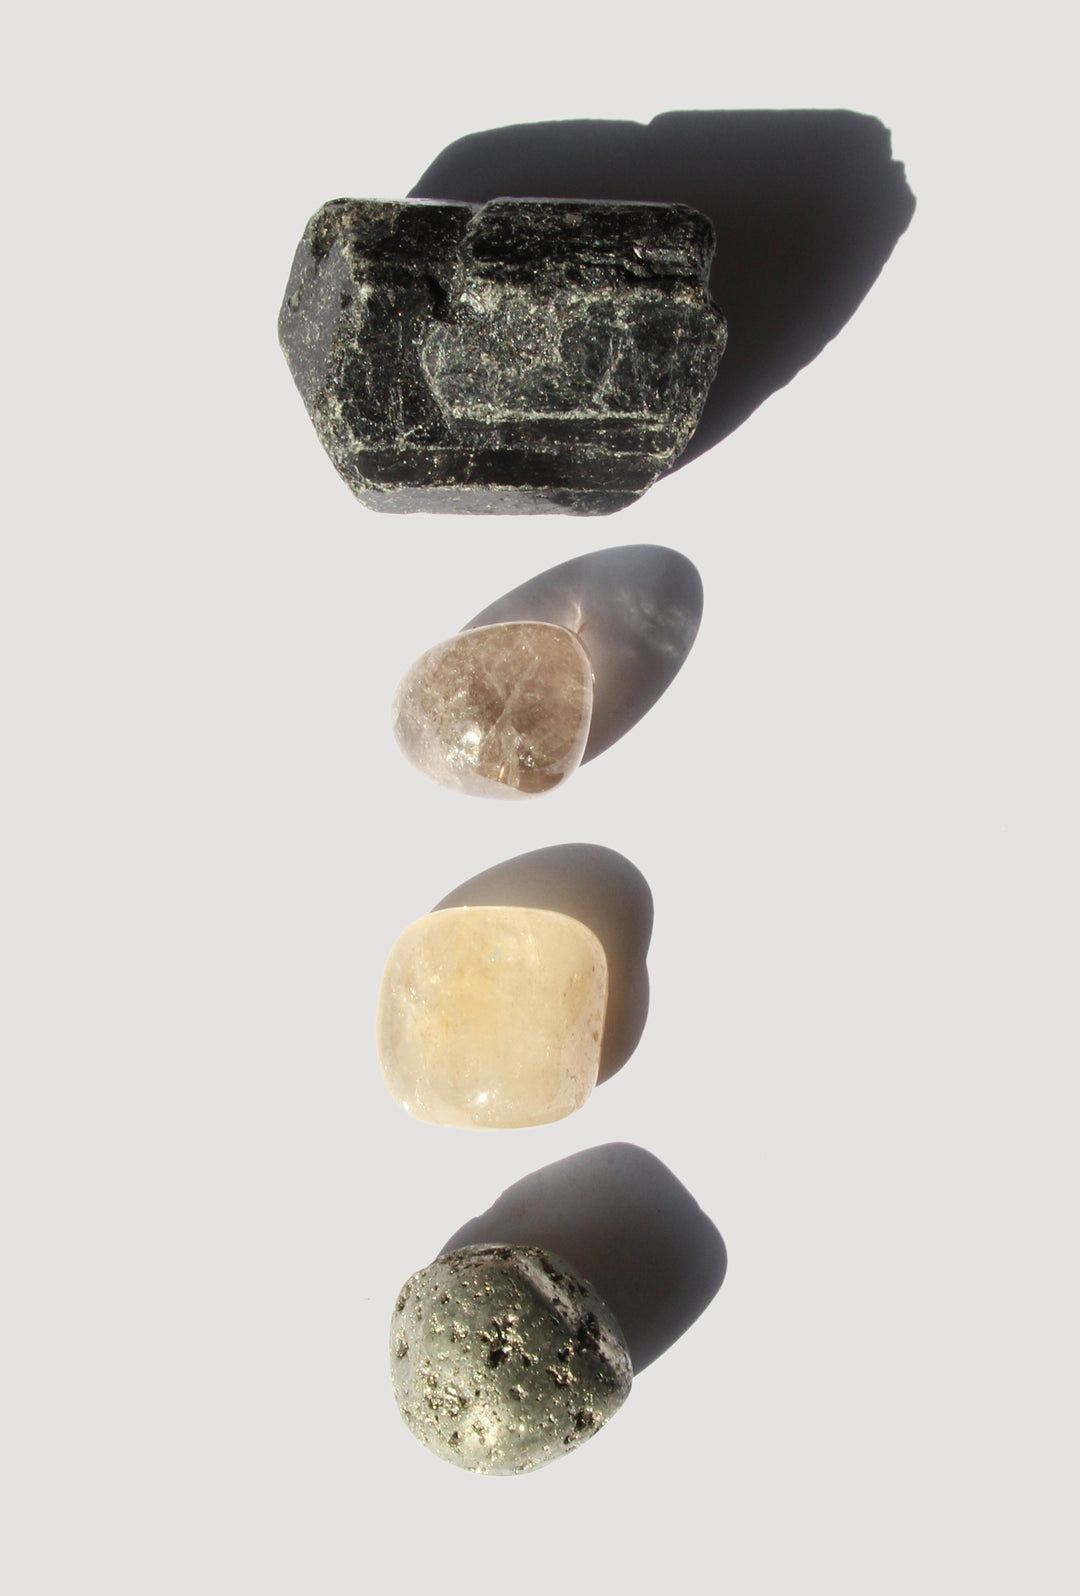 llayers kit coffret pierres protection pyrite tourmaline quartz fumé citrine lithotérapie